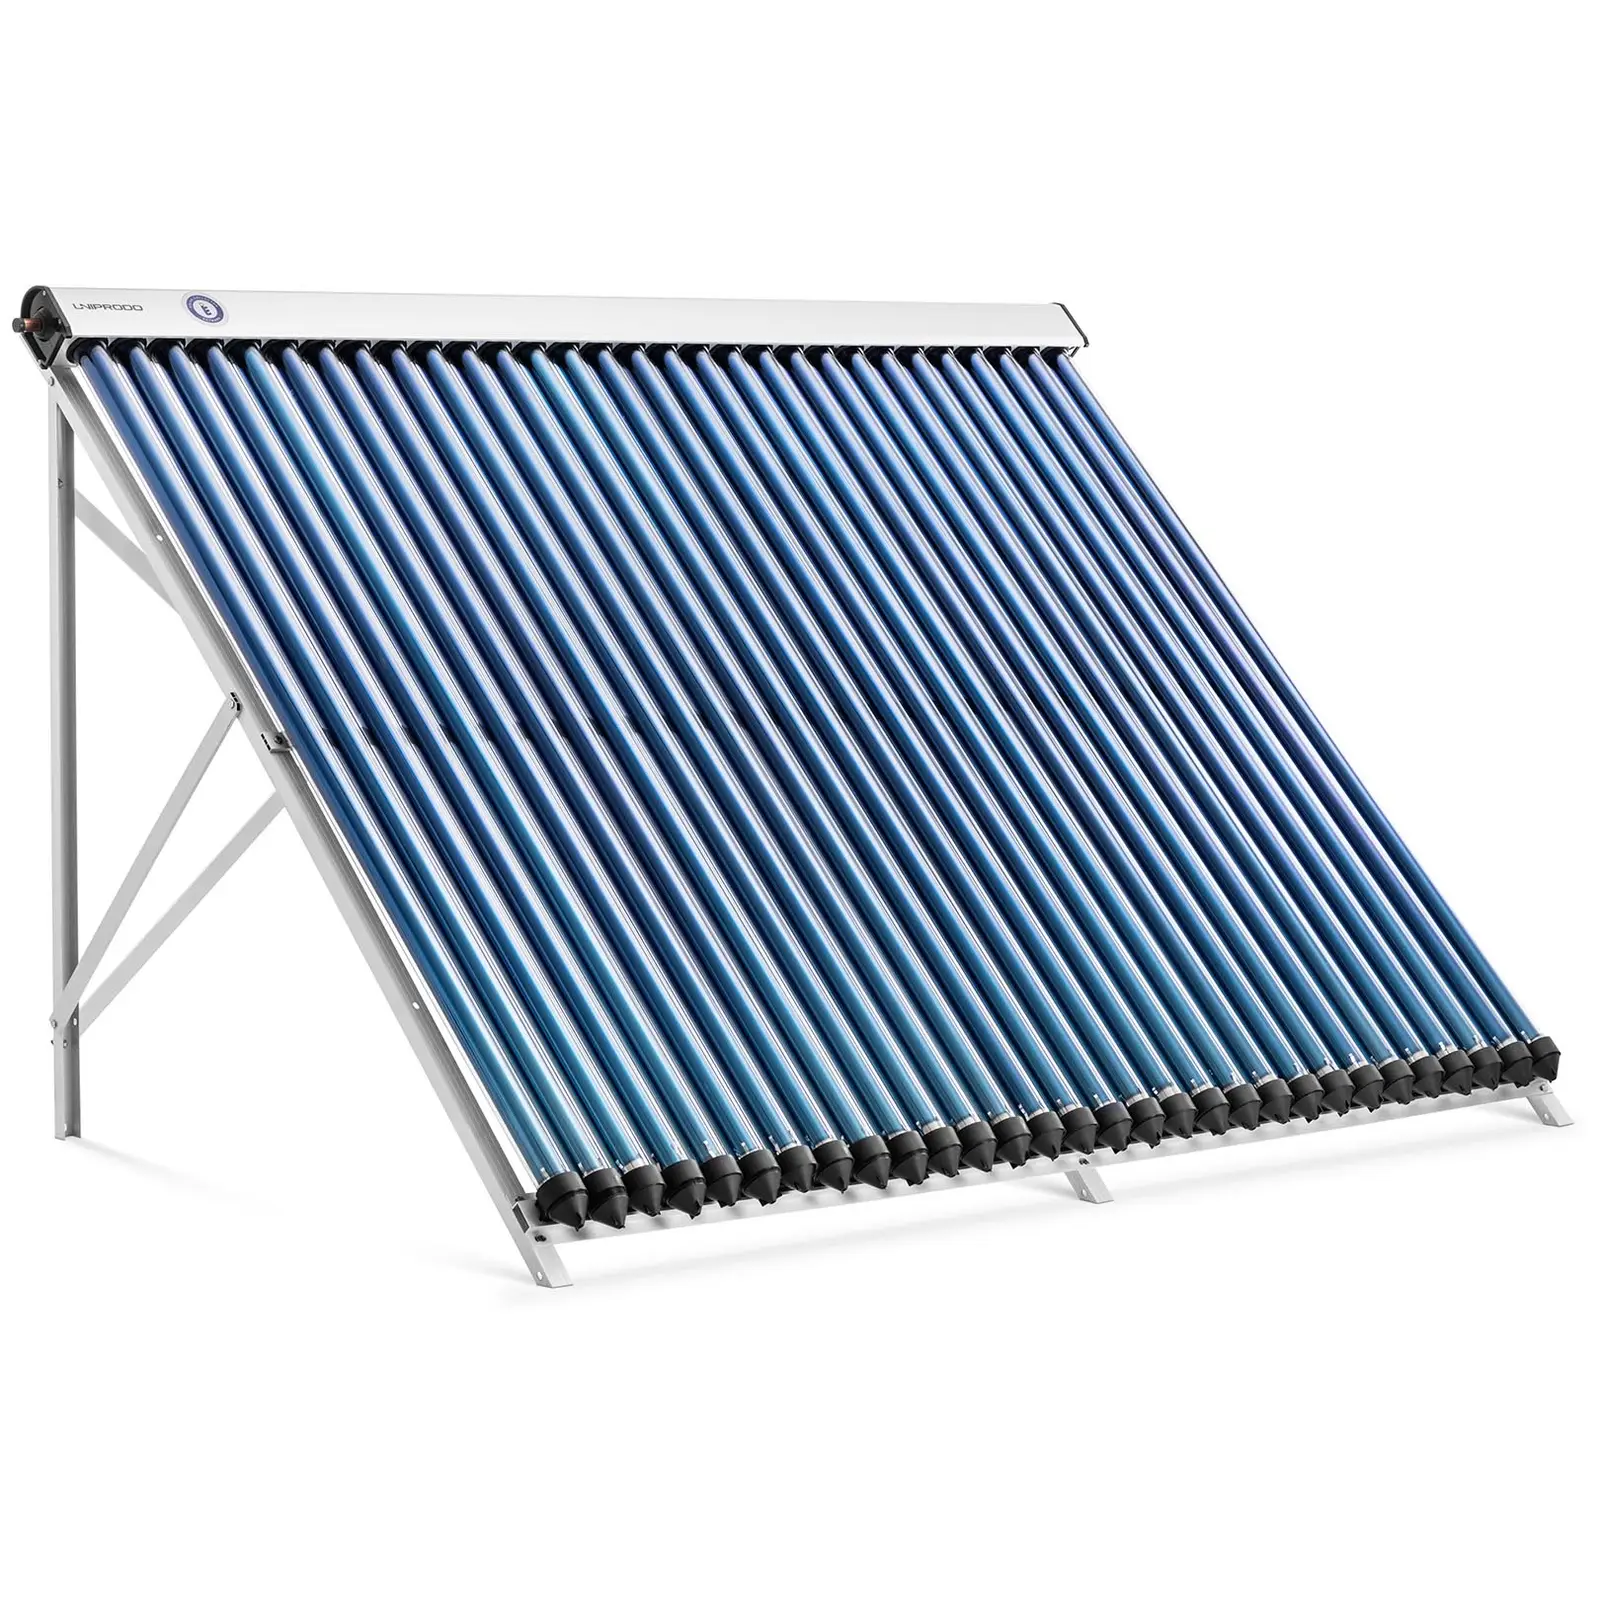 Pannello solare termico - 30 tubi - 250 - 300 L - 2.4 m² - -45 - 90 °C